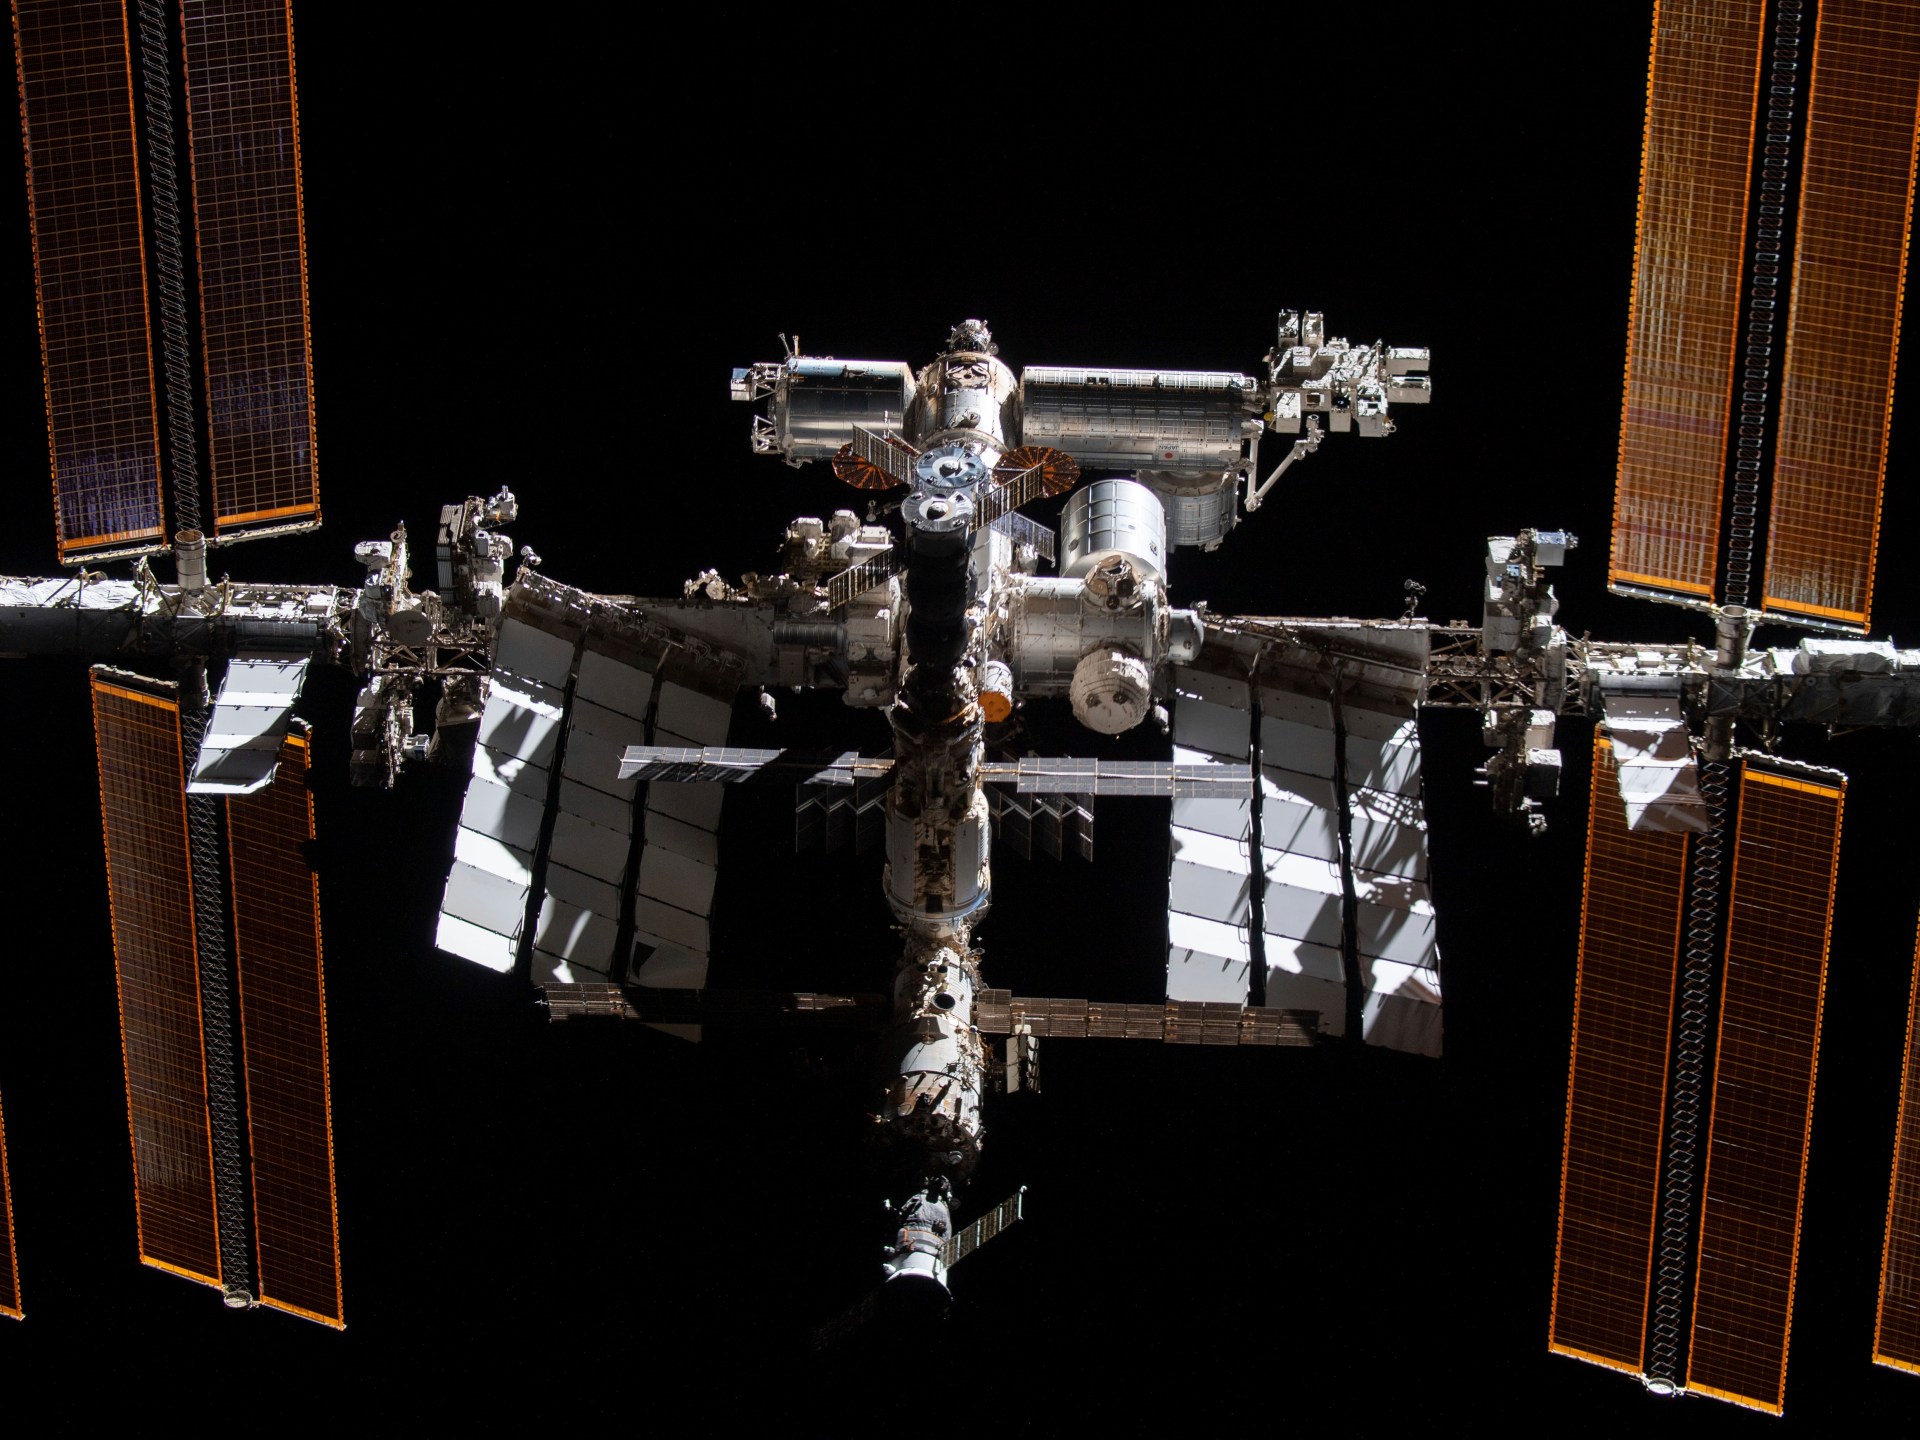 رواد الفضاء في محطة الفضاء الدولية يحتمون بعد تحطم قمر صناعي روسي معطل | أخبار الفضاء